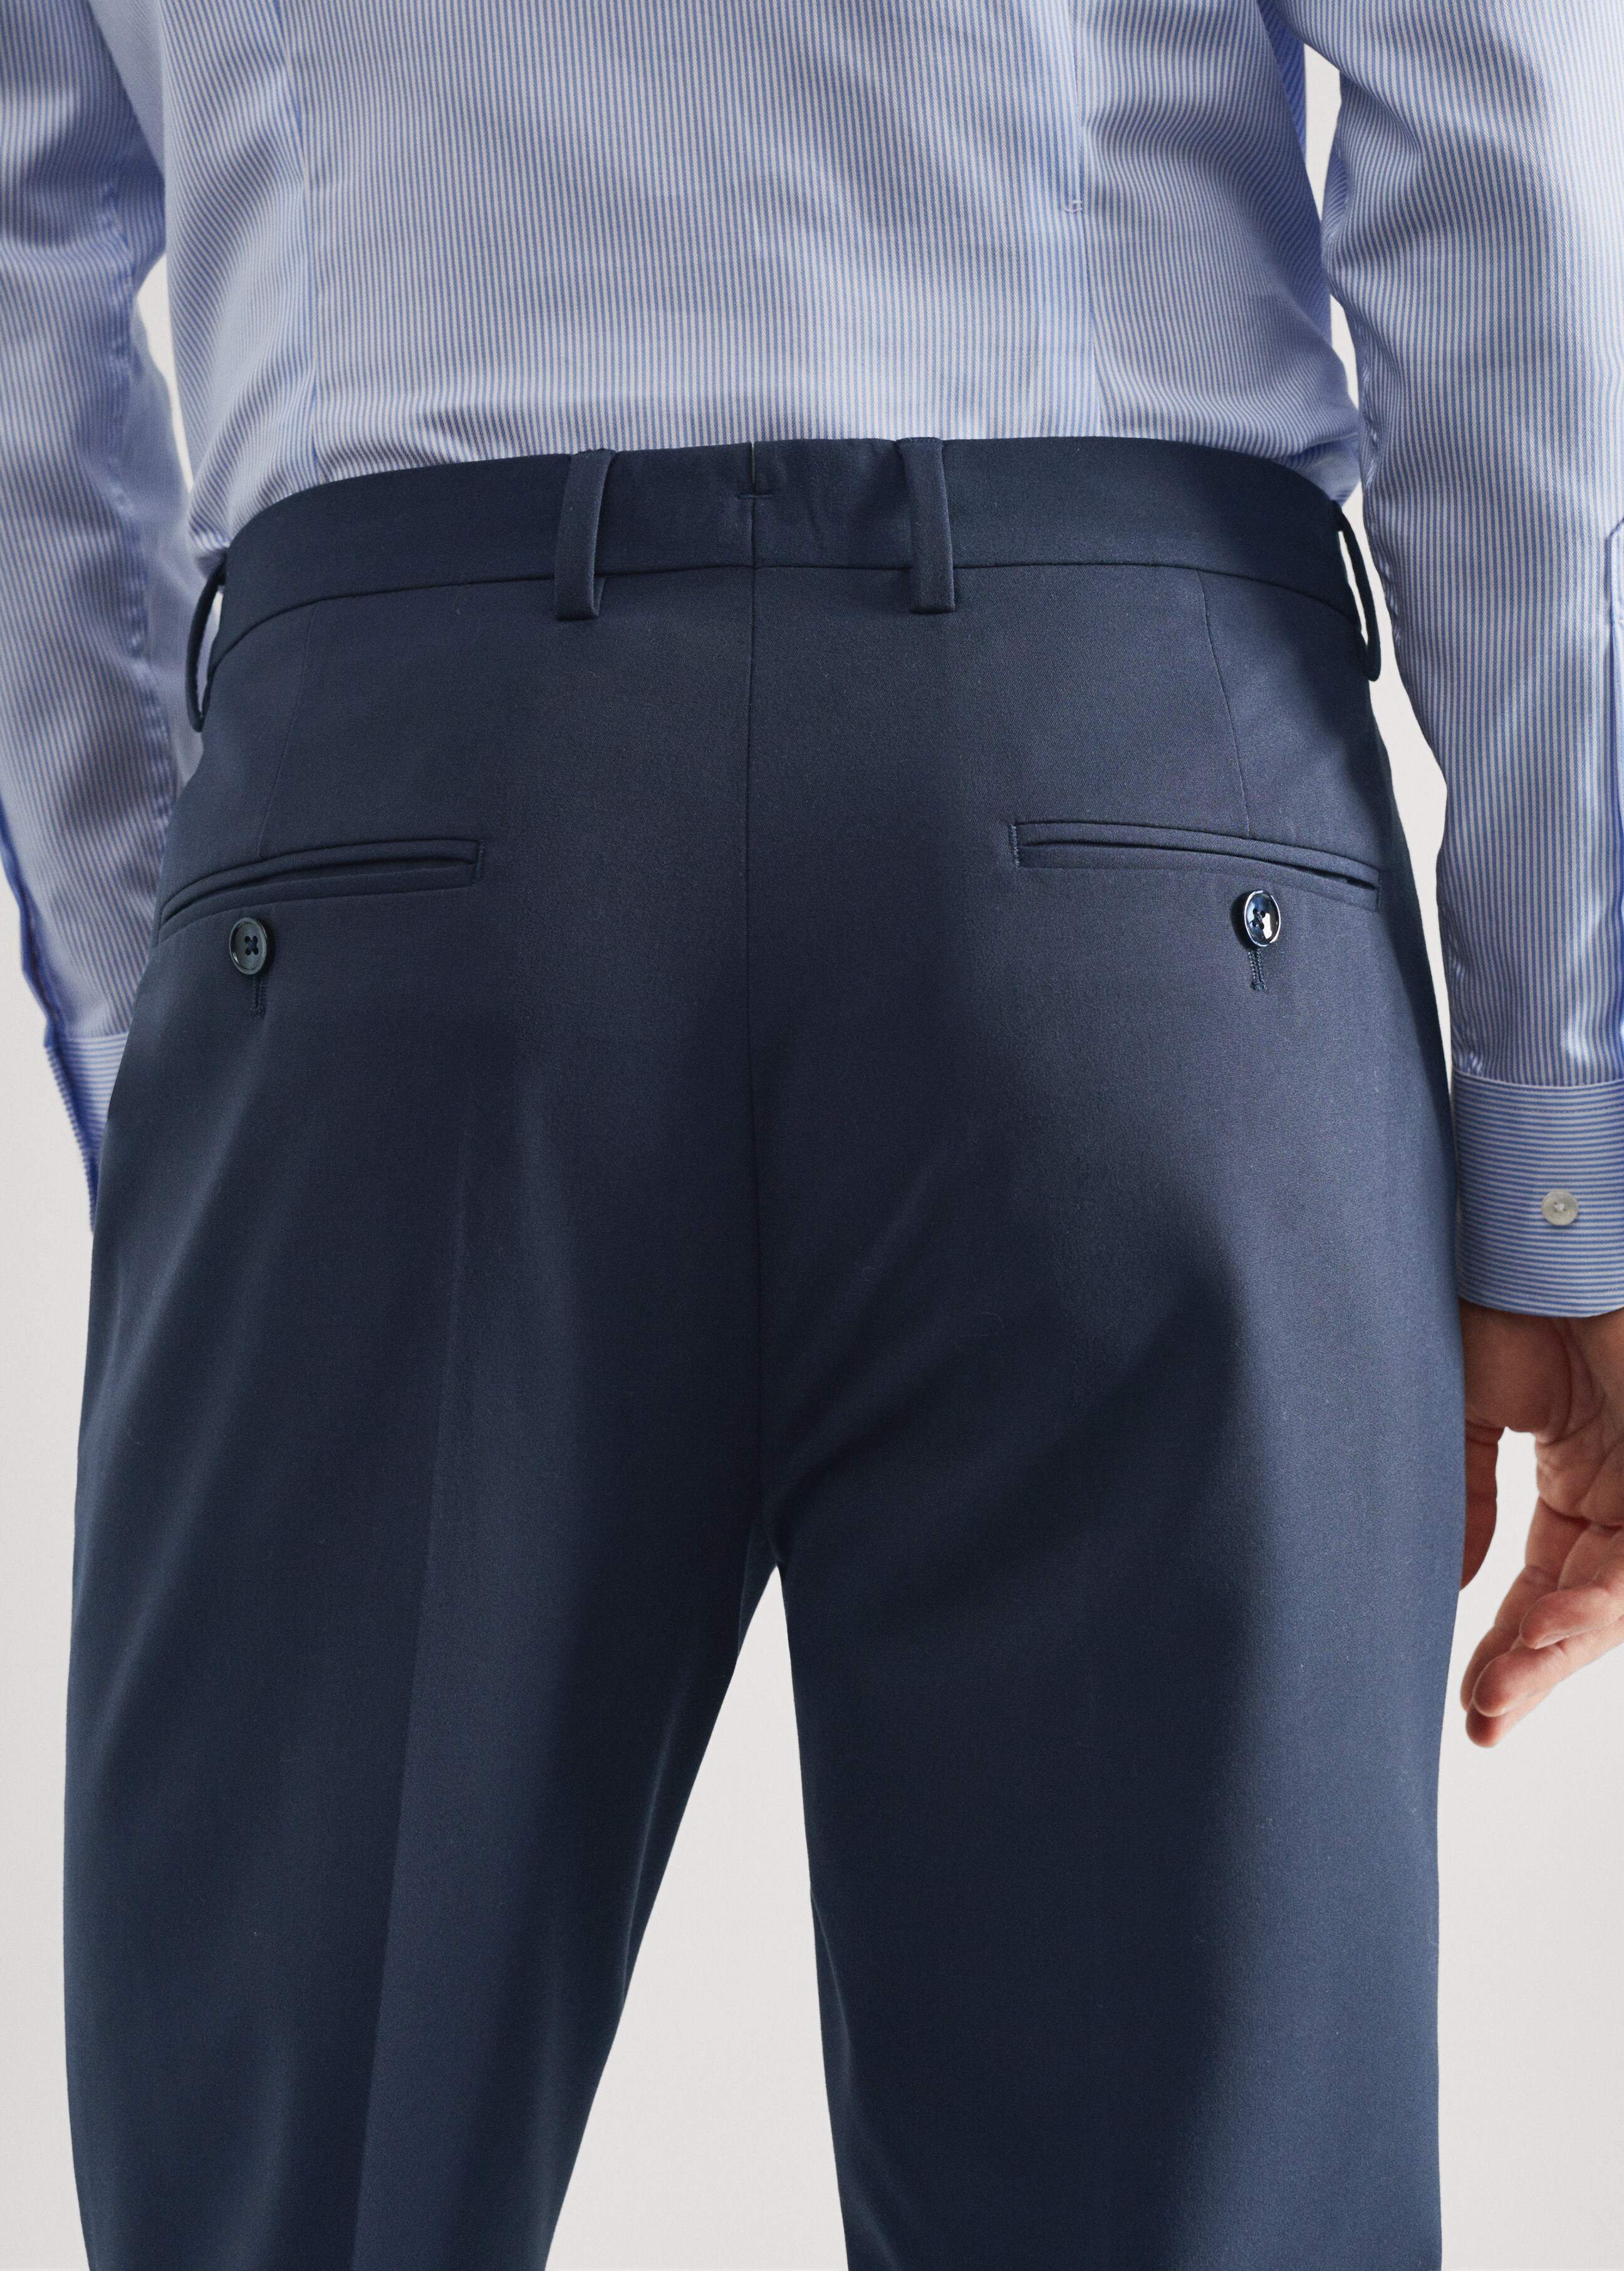 Pantalón traje slim fit - Detalle del artículo 6